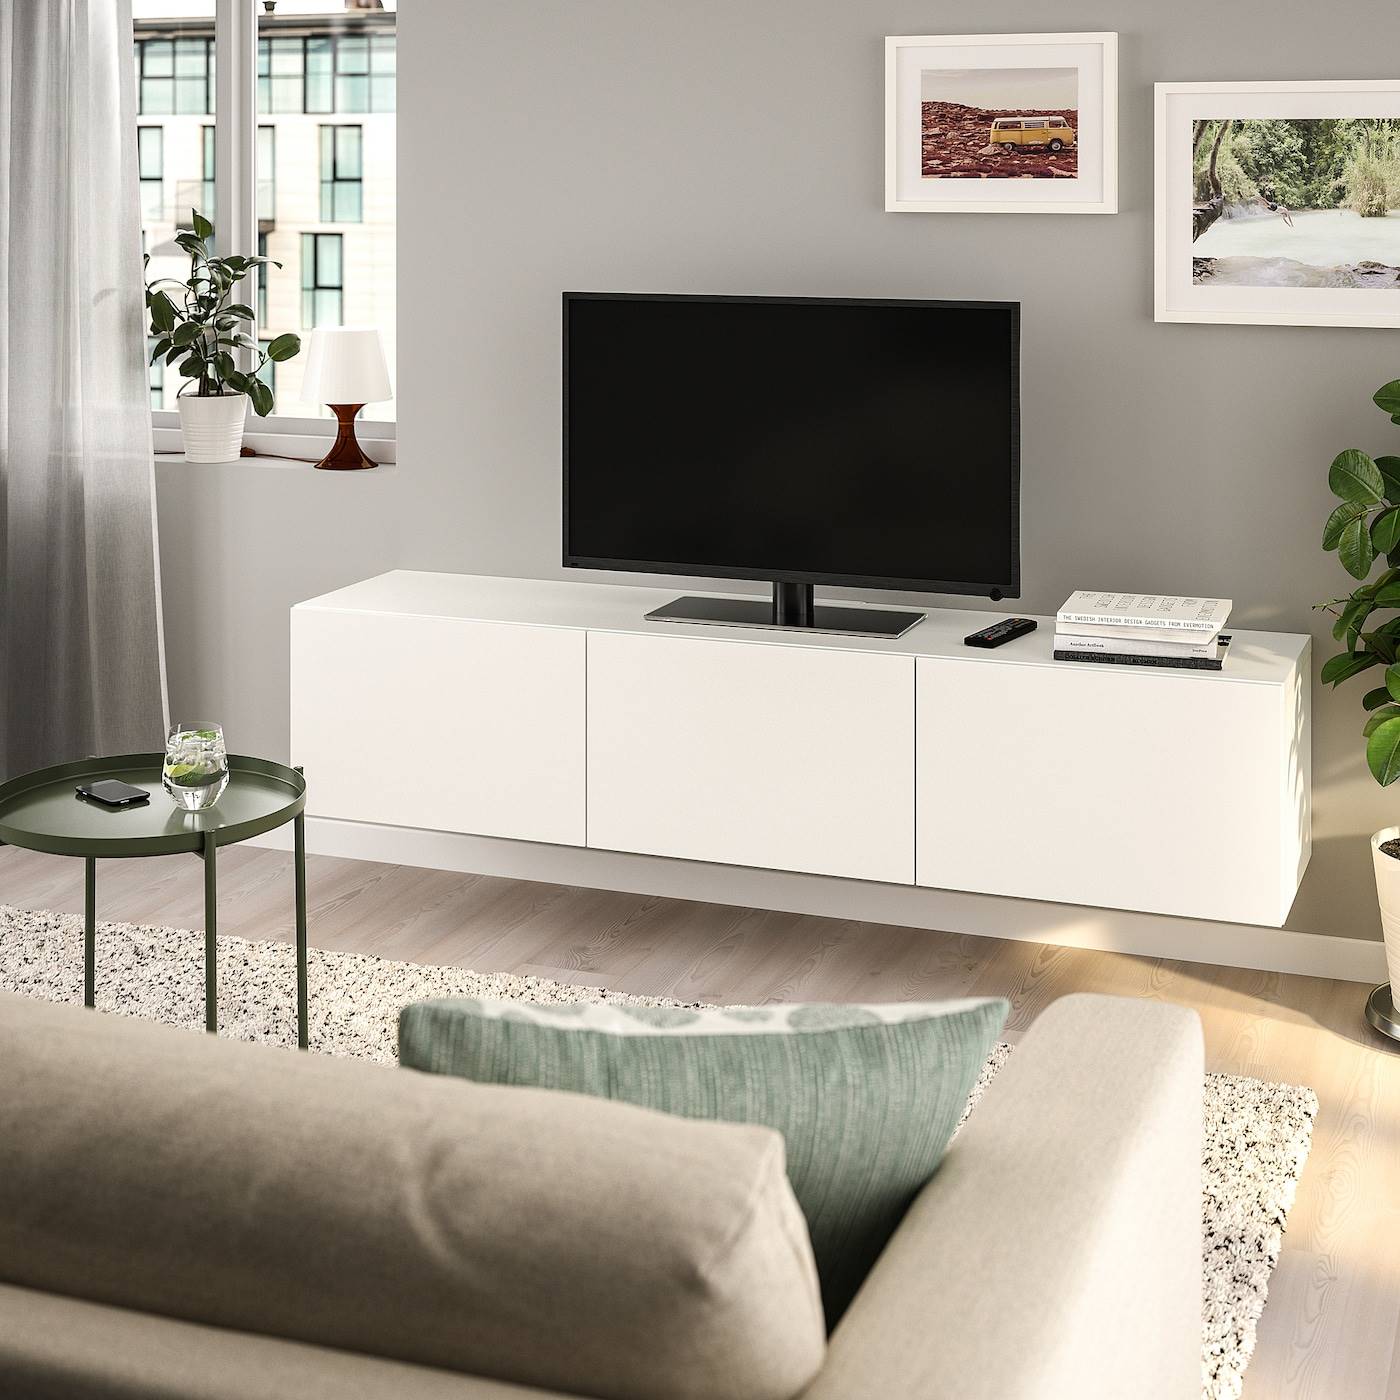 Mueble TV BESTÅ en color blanco de IKEA.